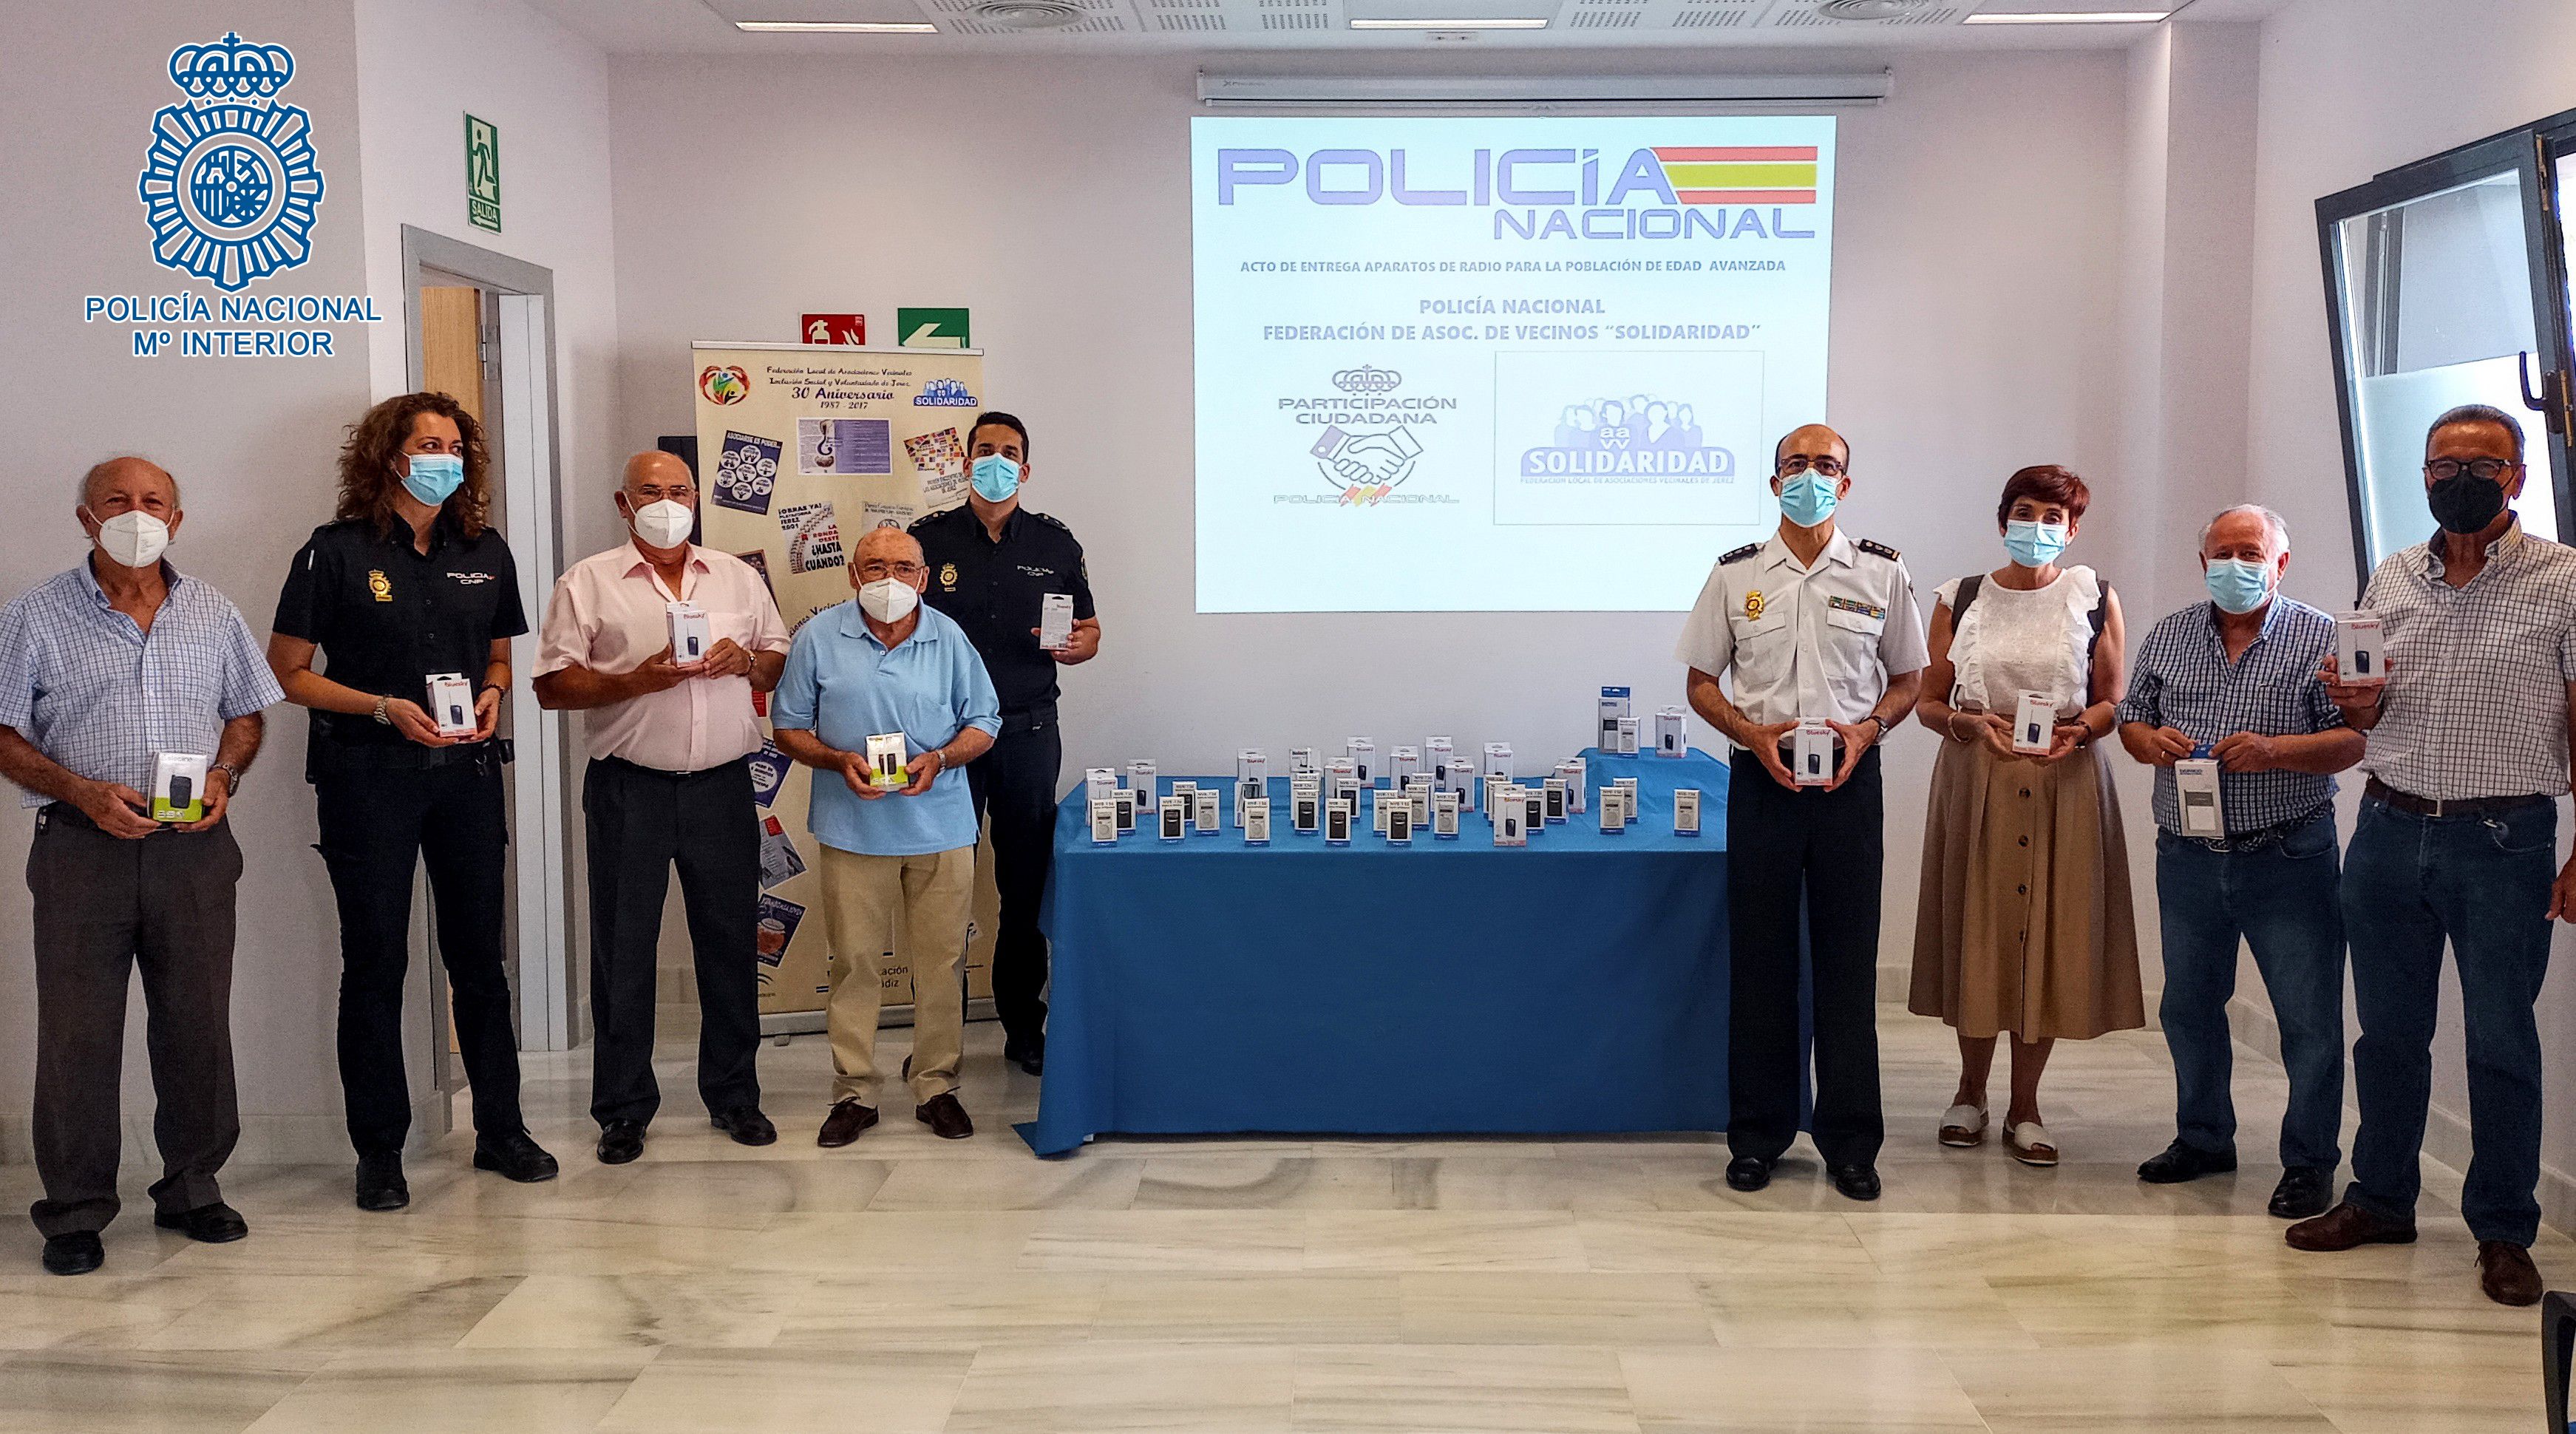 Policías y vecinos jerezanos donan 50 aparatos de radio portátiles para mayores en riesgo de exclusión